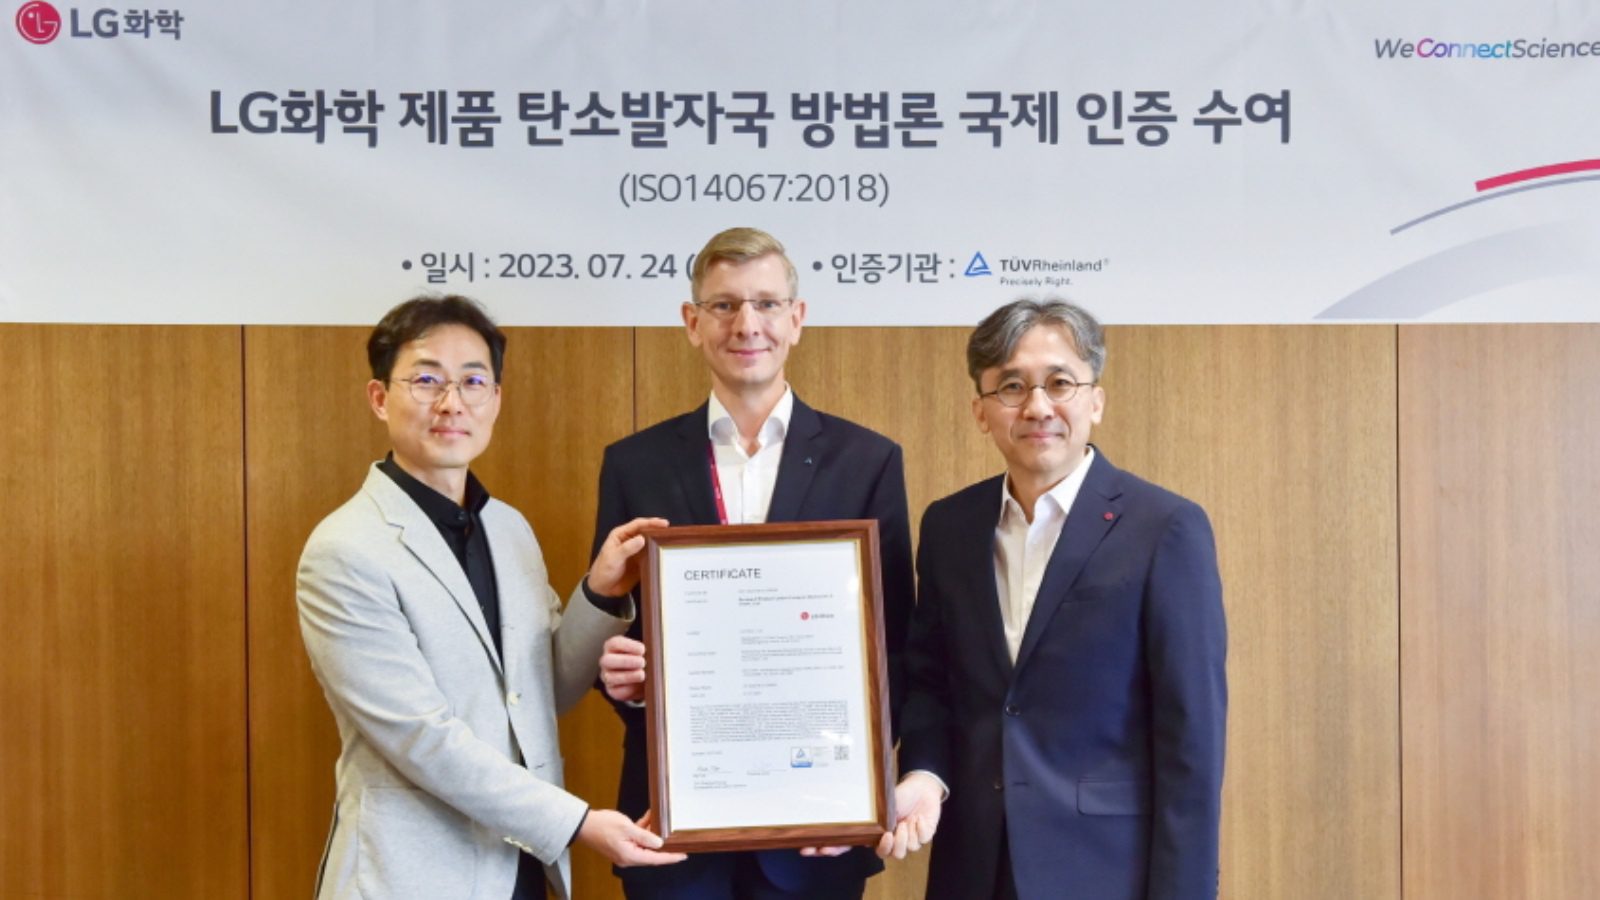 TUV Rheinland сертифицировала LG Chem как первую в Корее компанию по оценке углеродного следа